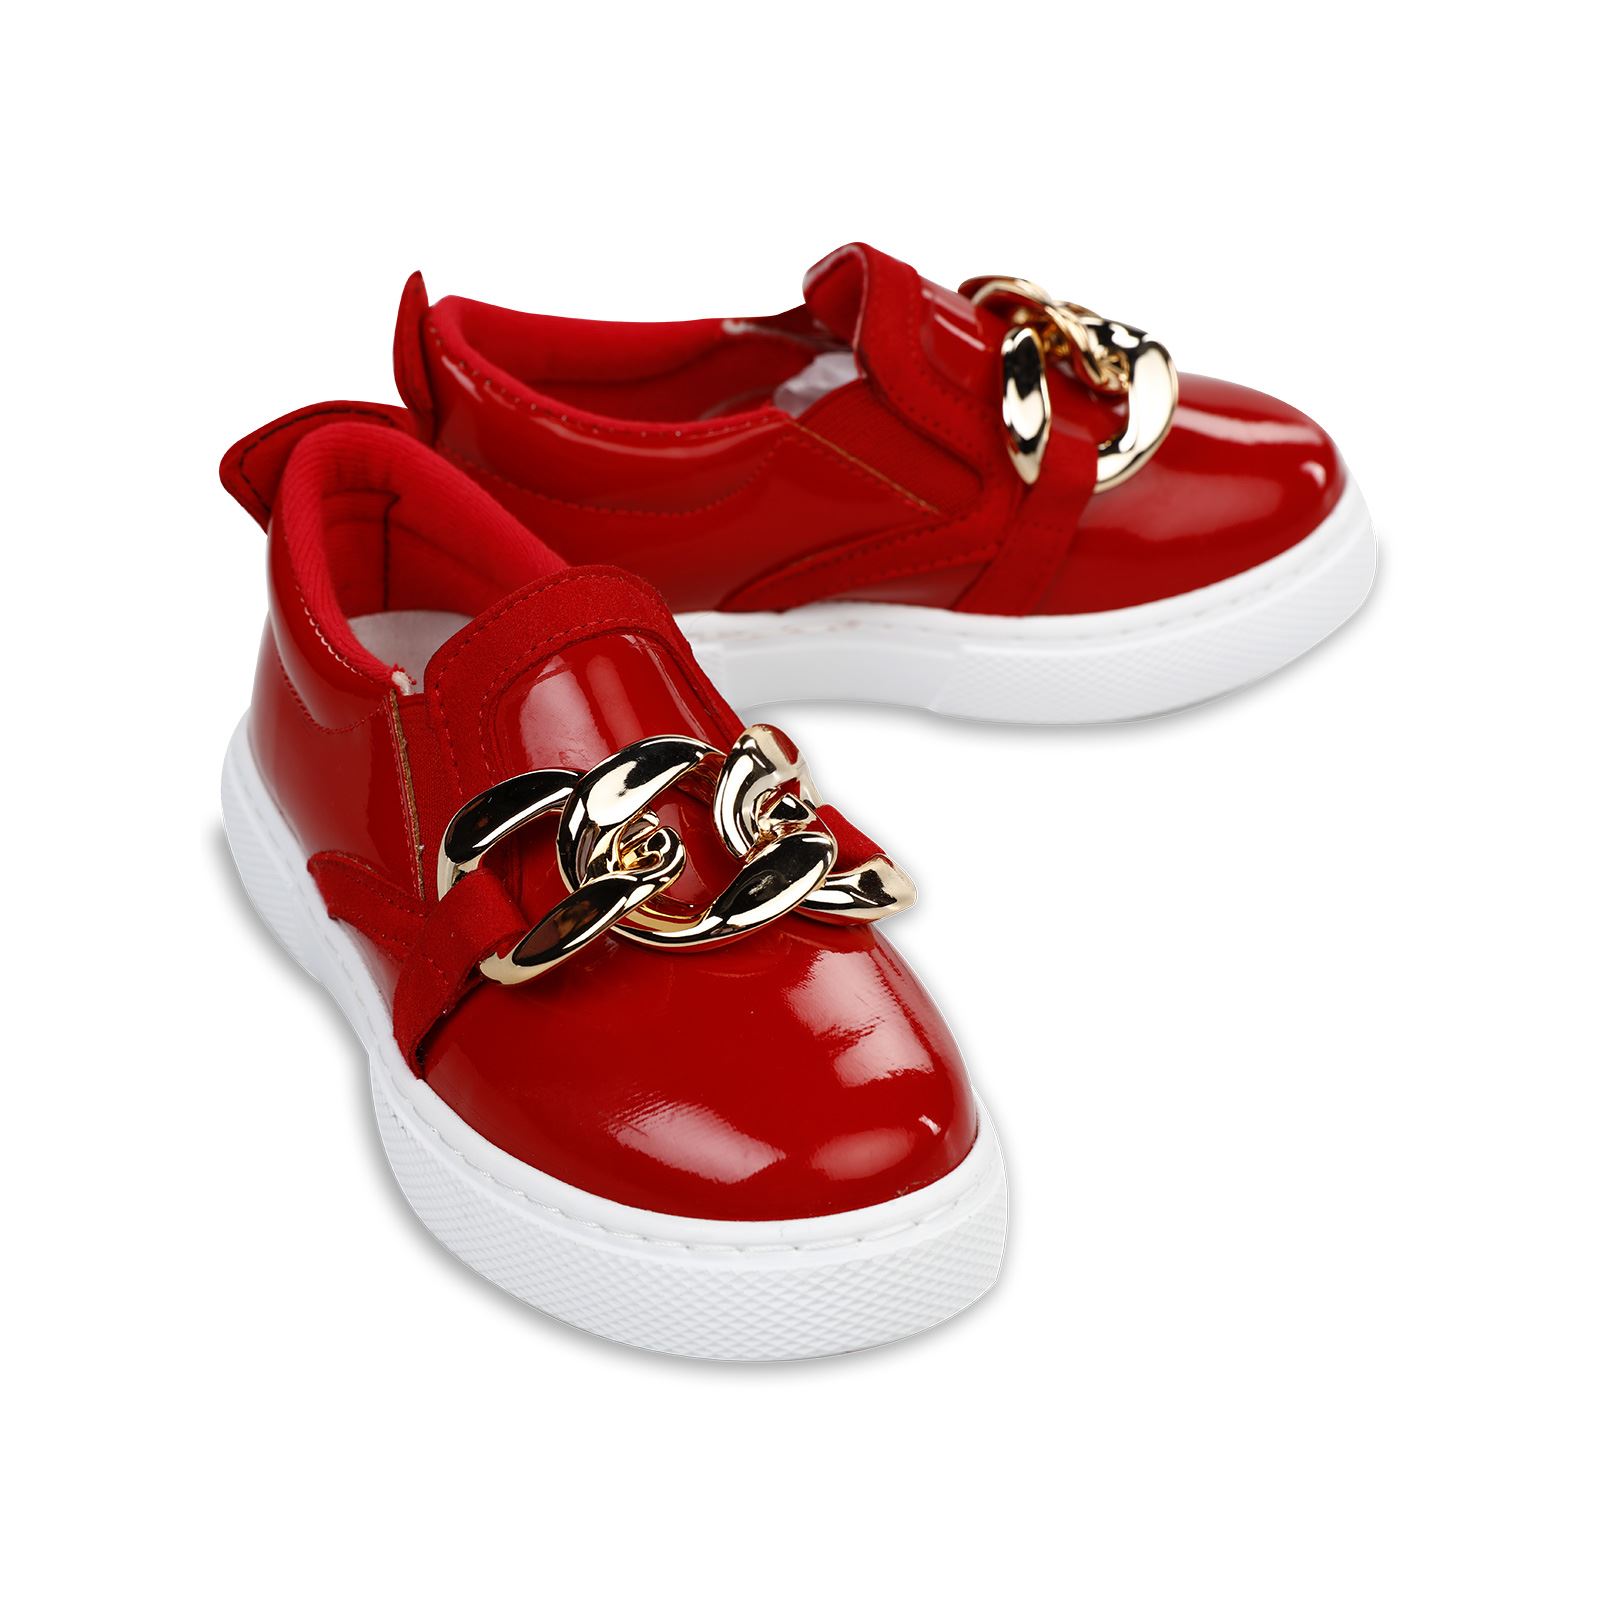 Harli Kız Çocuk Spor Ayakkabı 31-35 Numara Kırmızı